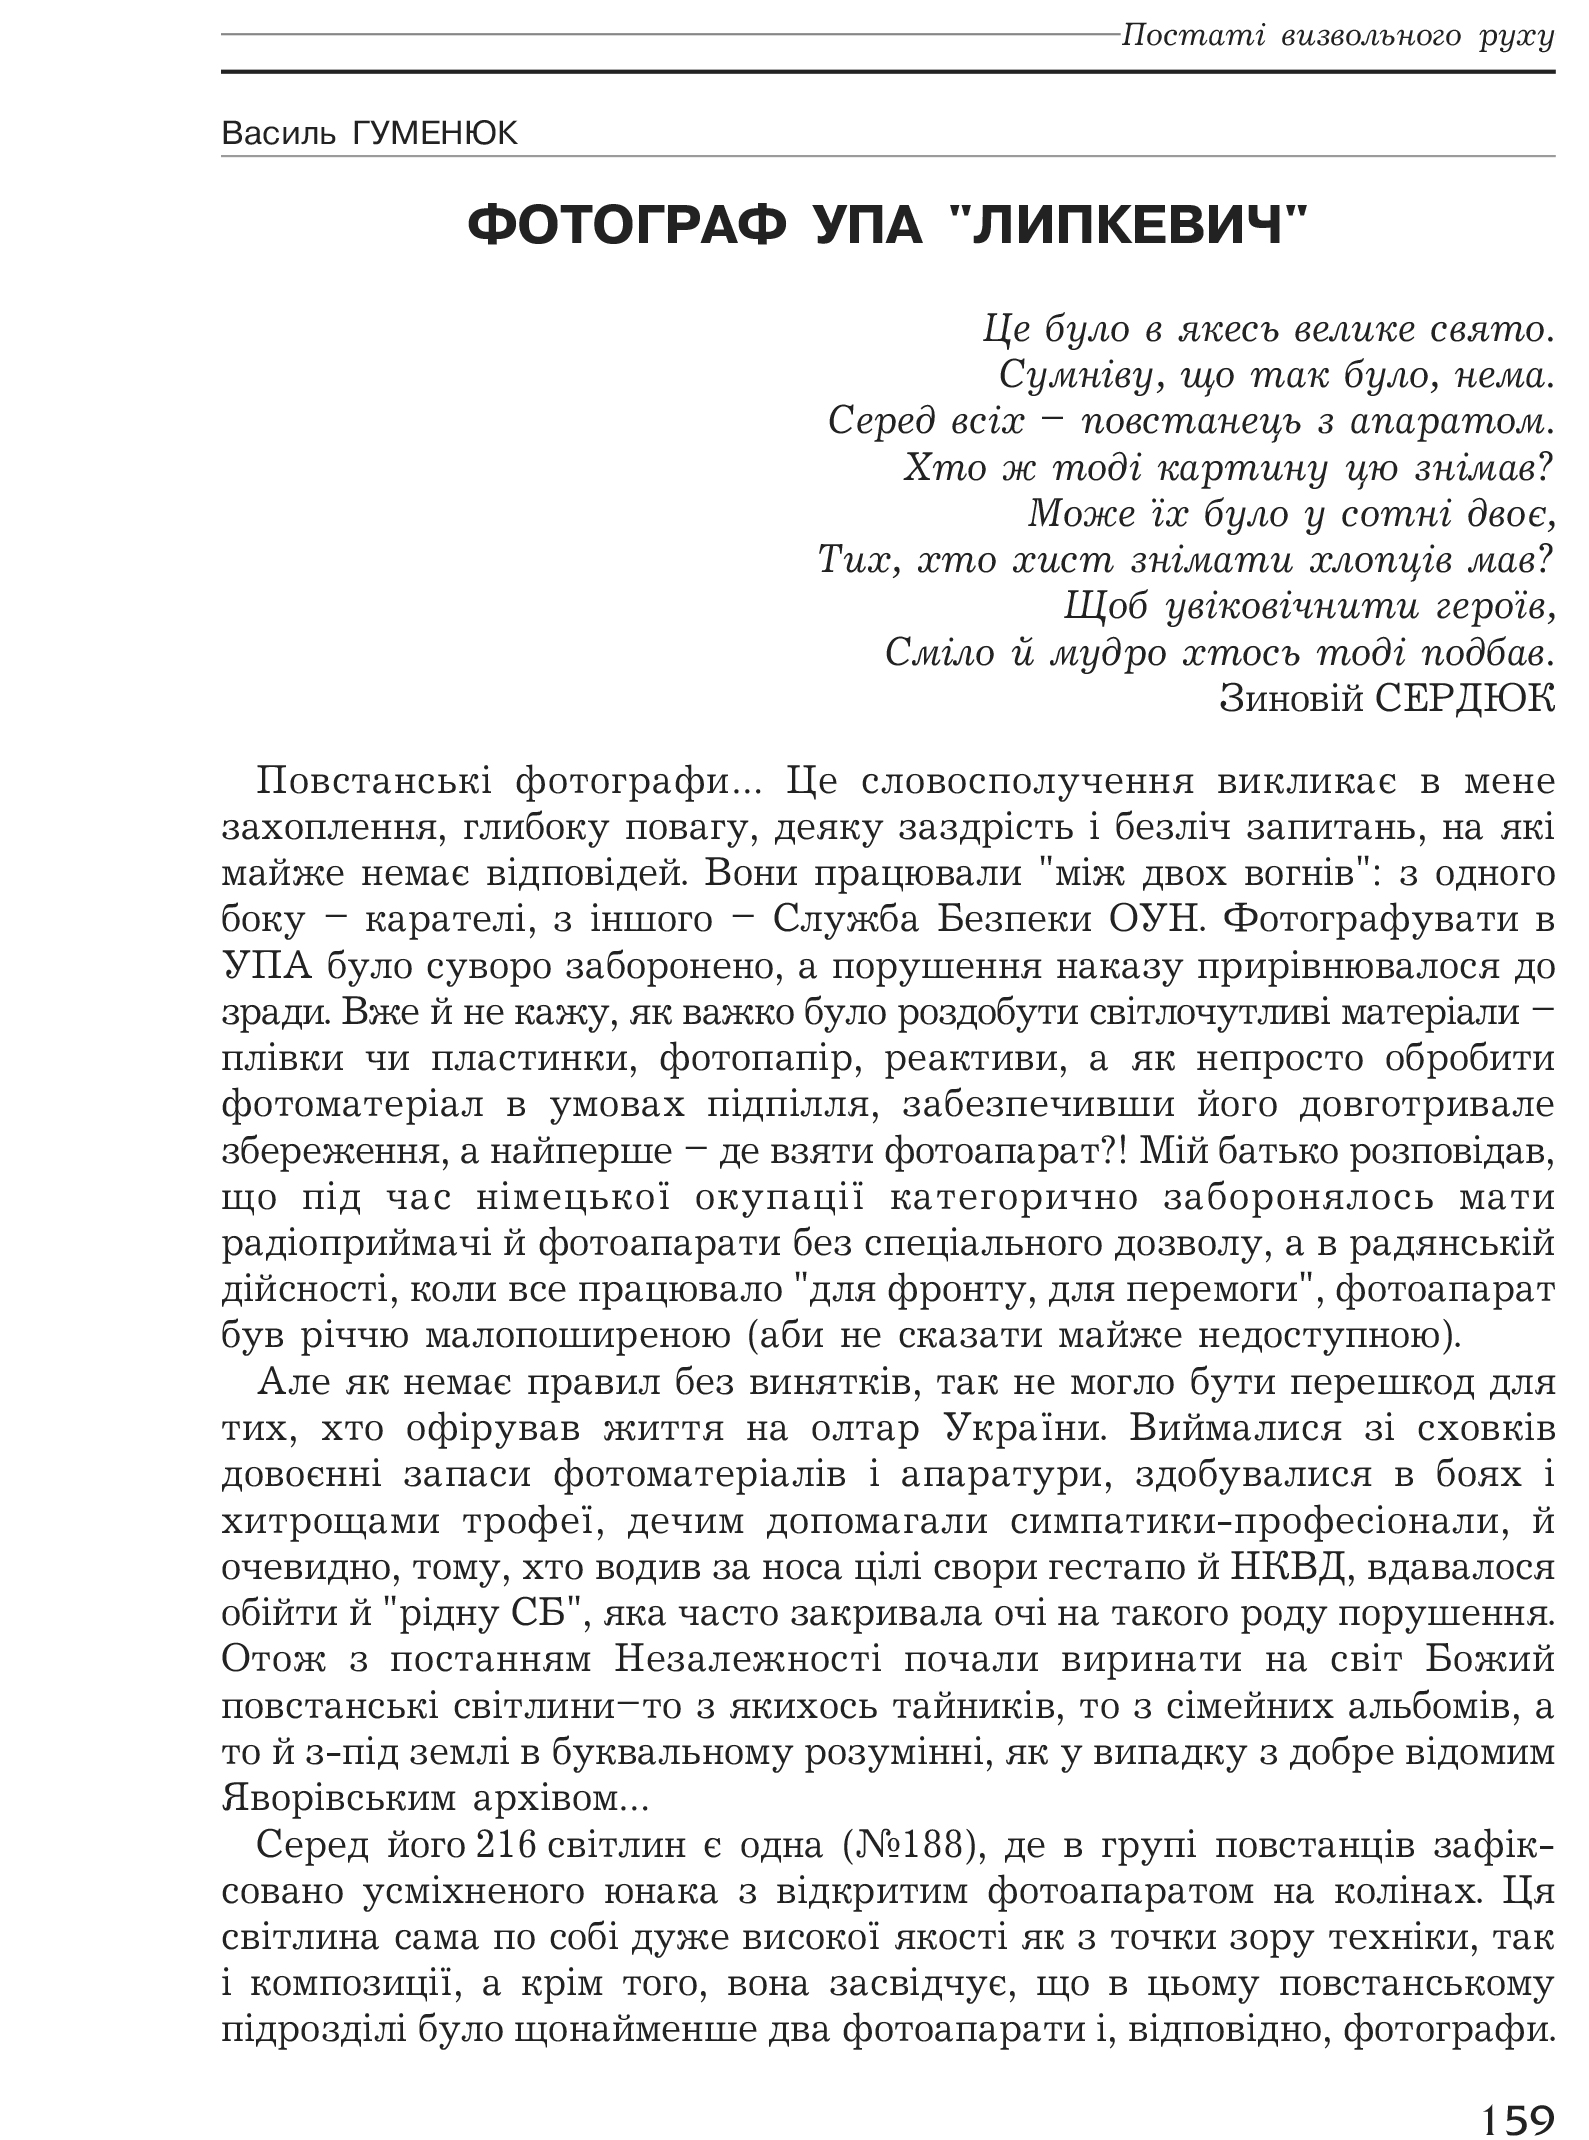 Український визвольний рух №1, ст. 159 - 164